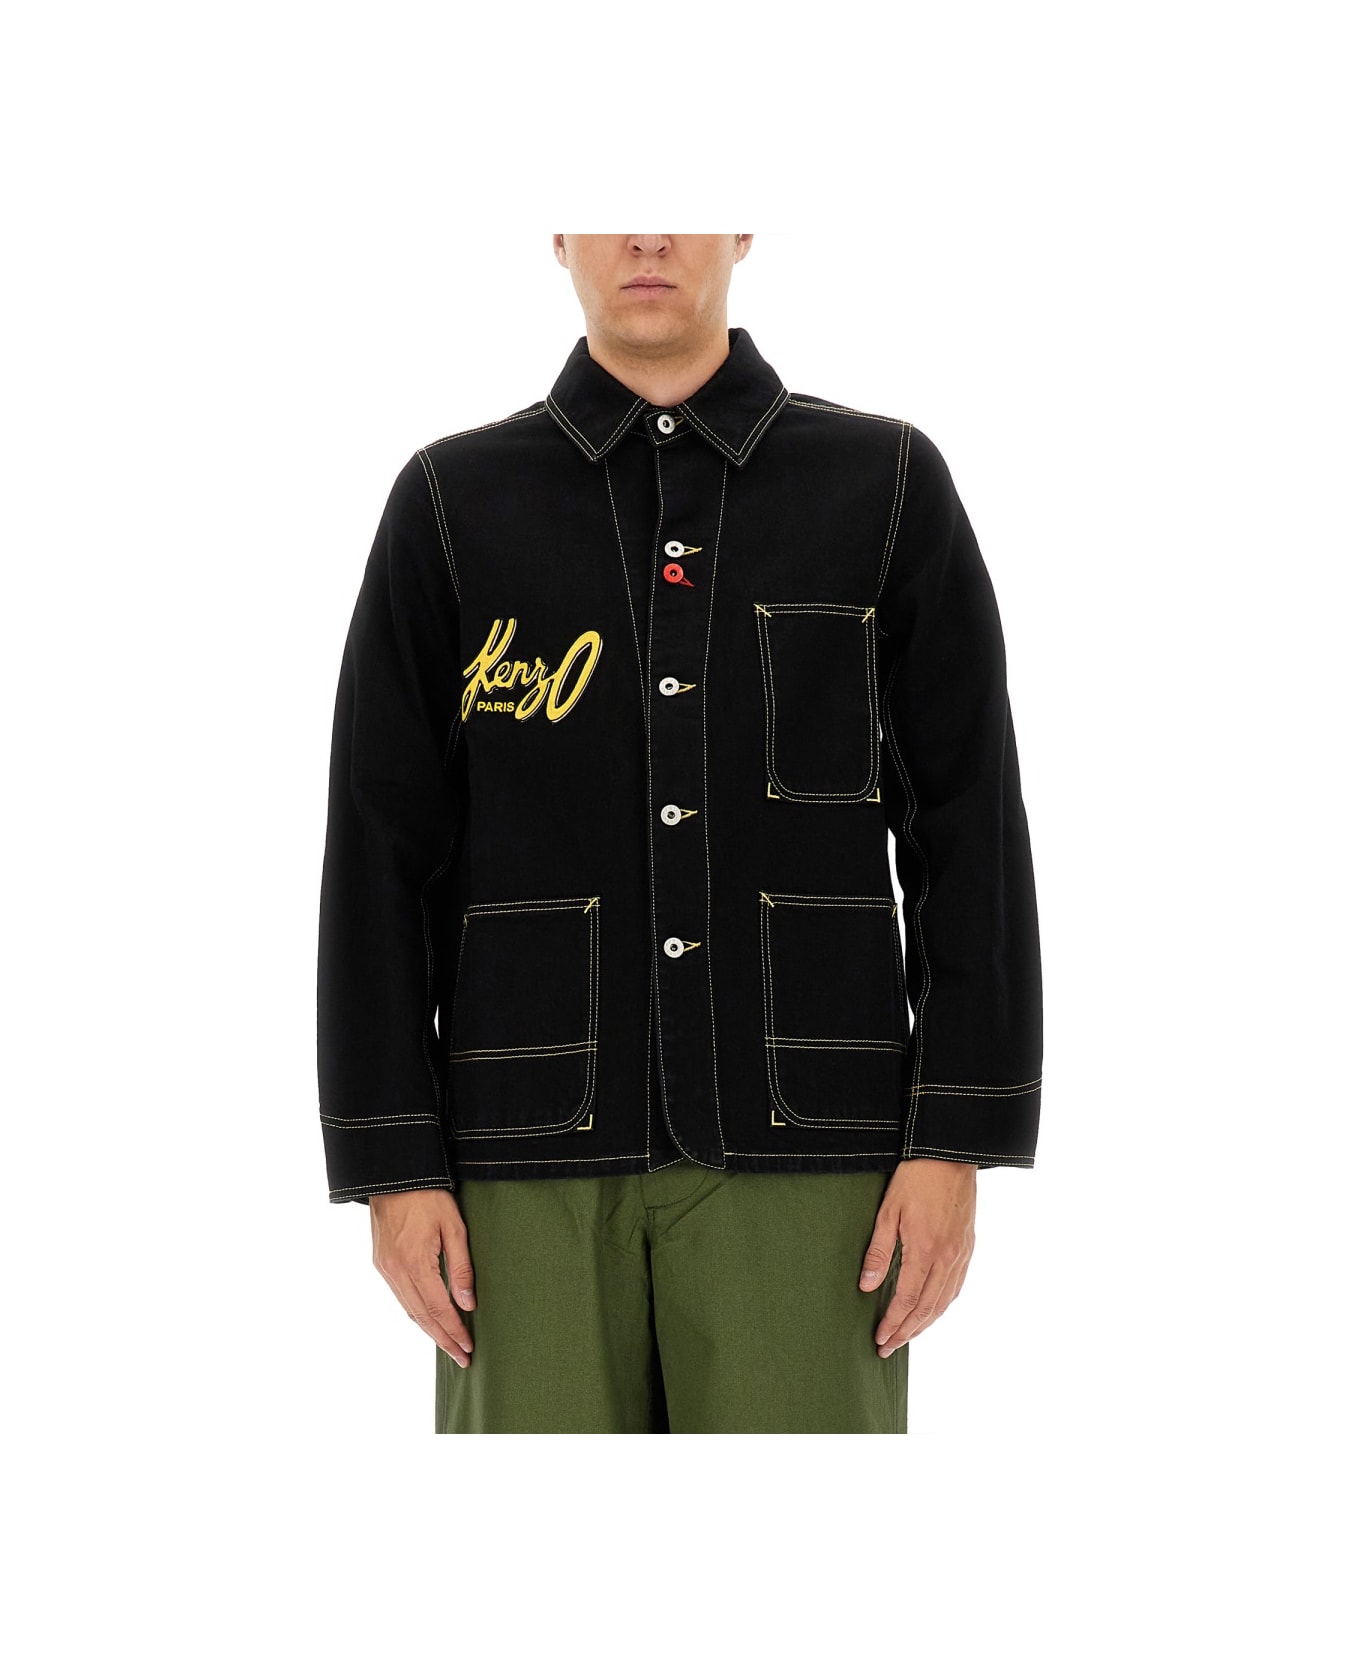 Kenzo Workwear Jacket - BLACK ジャケット